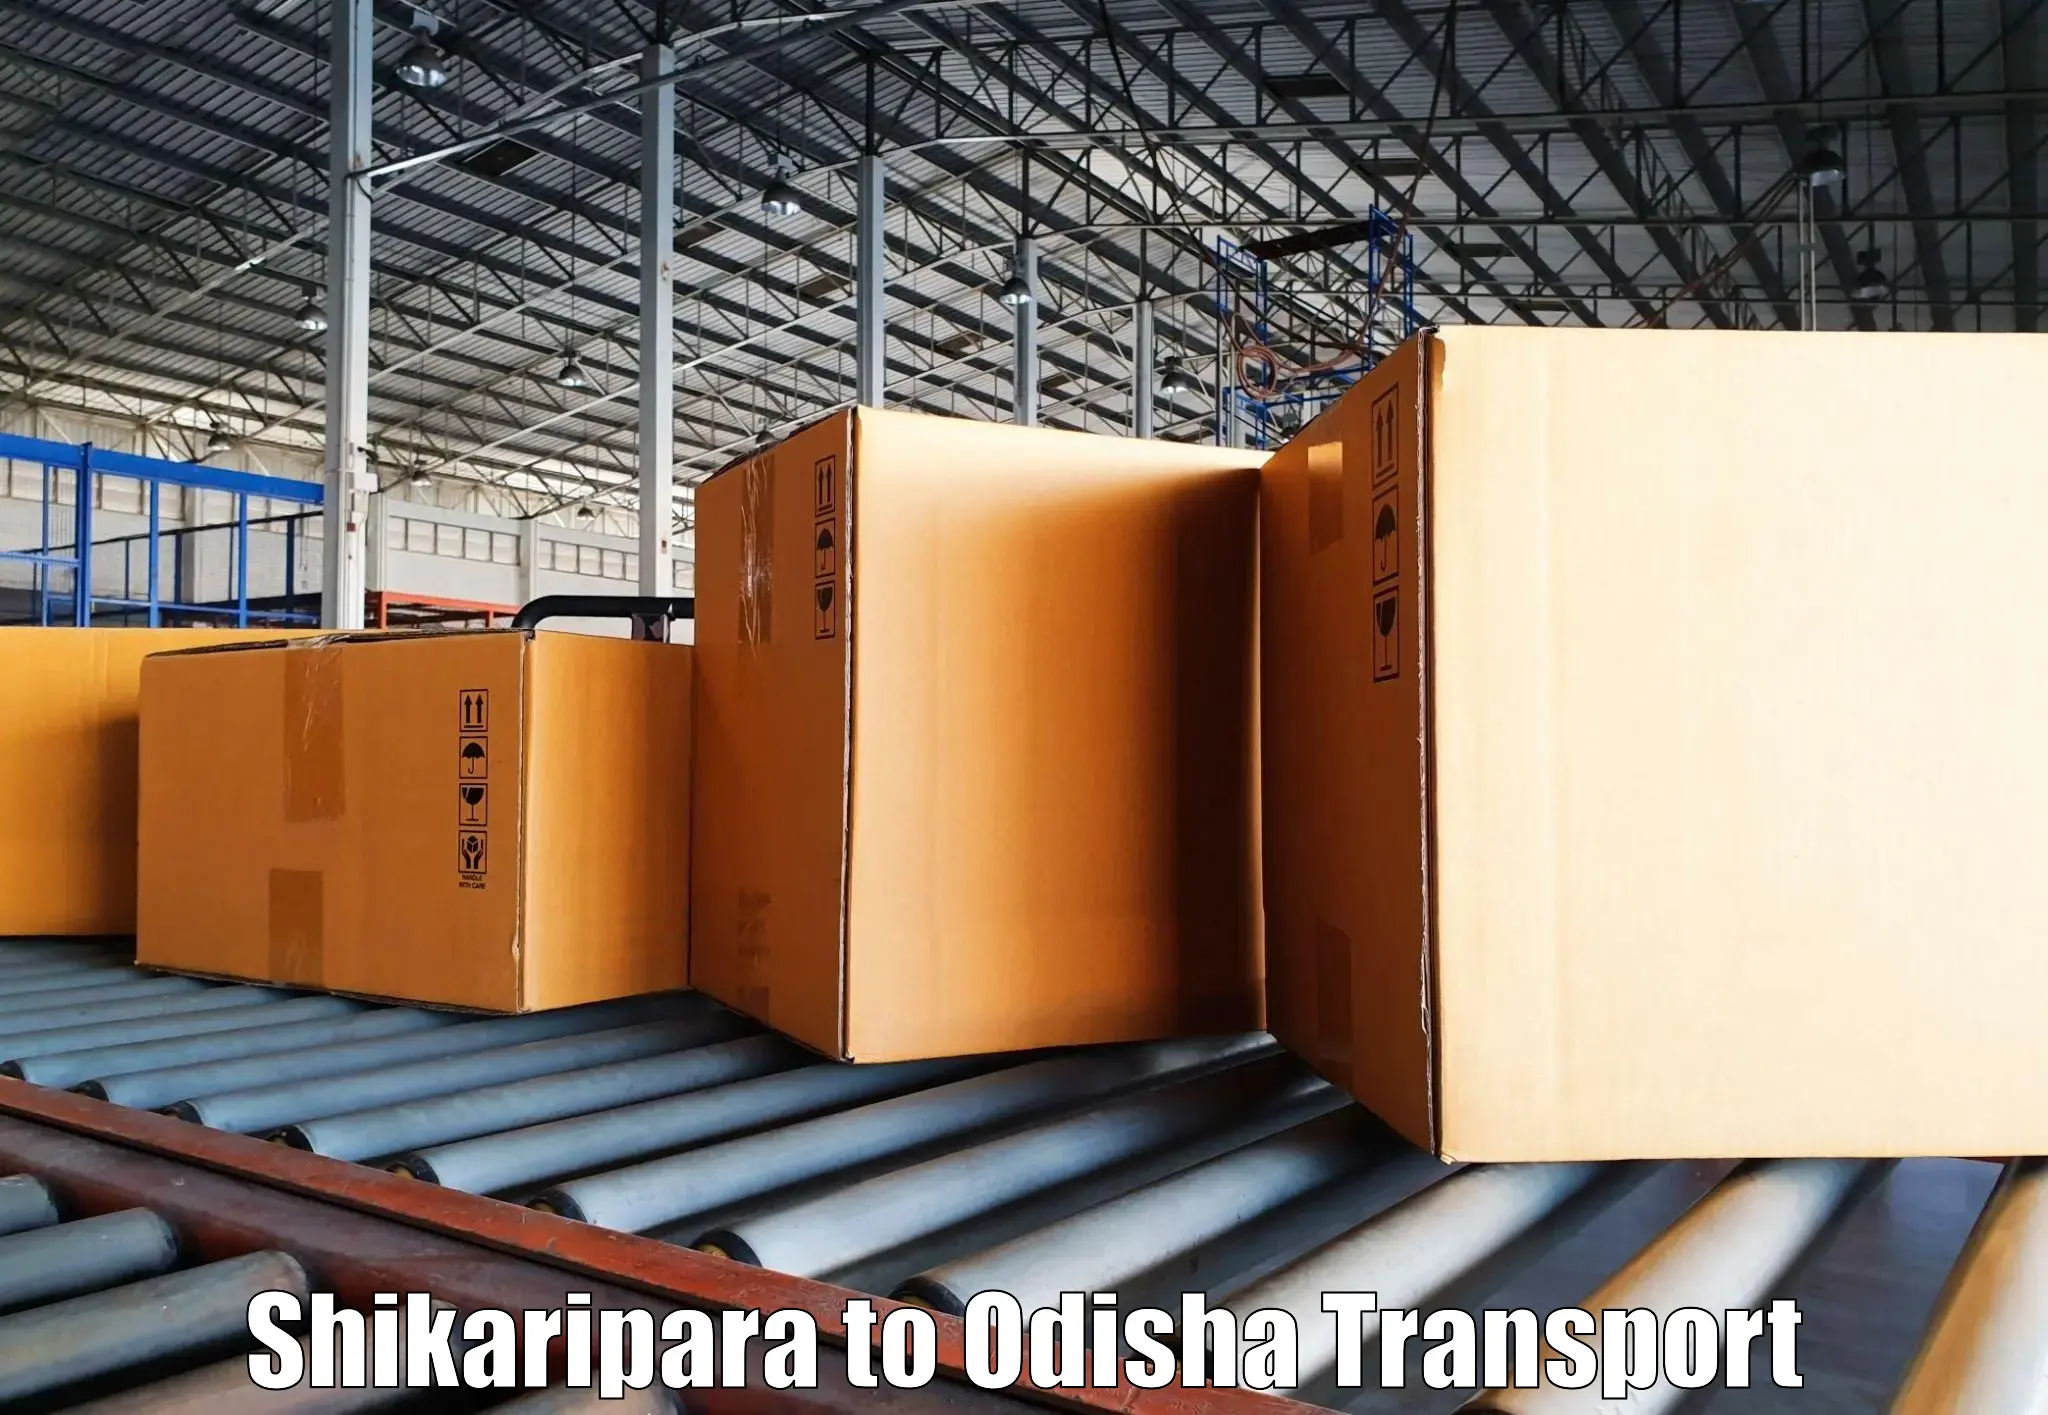 Transportation services in Shikaripara to Paikana